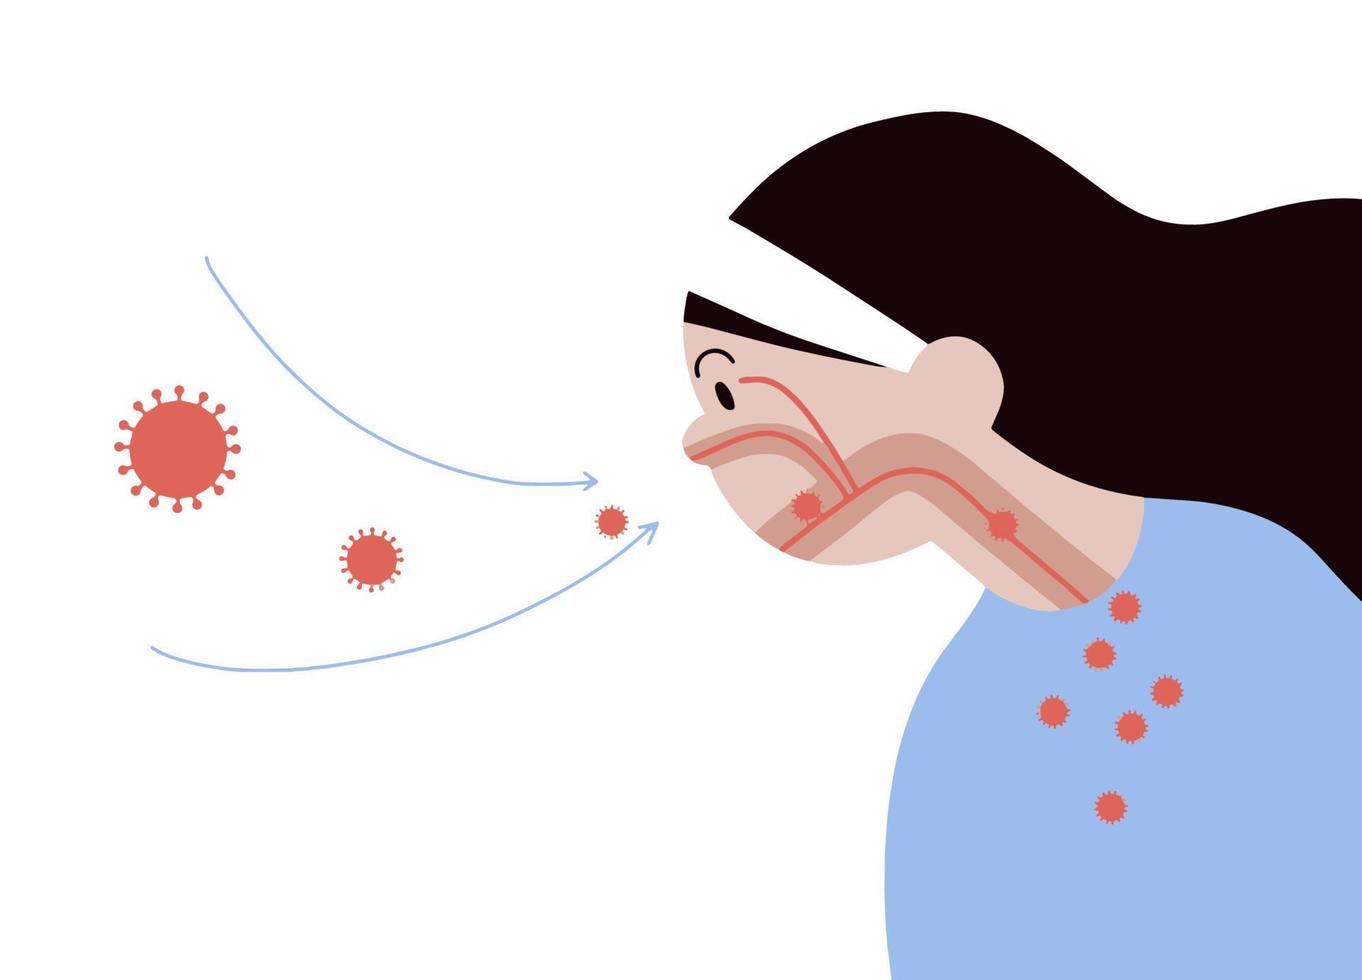 corona vírus ,bactérias e fungos para dentro respiratório do humano a partir de respirar. ilustração sobre ar poluição vetor